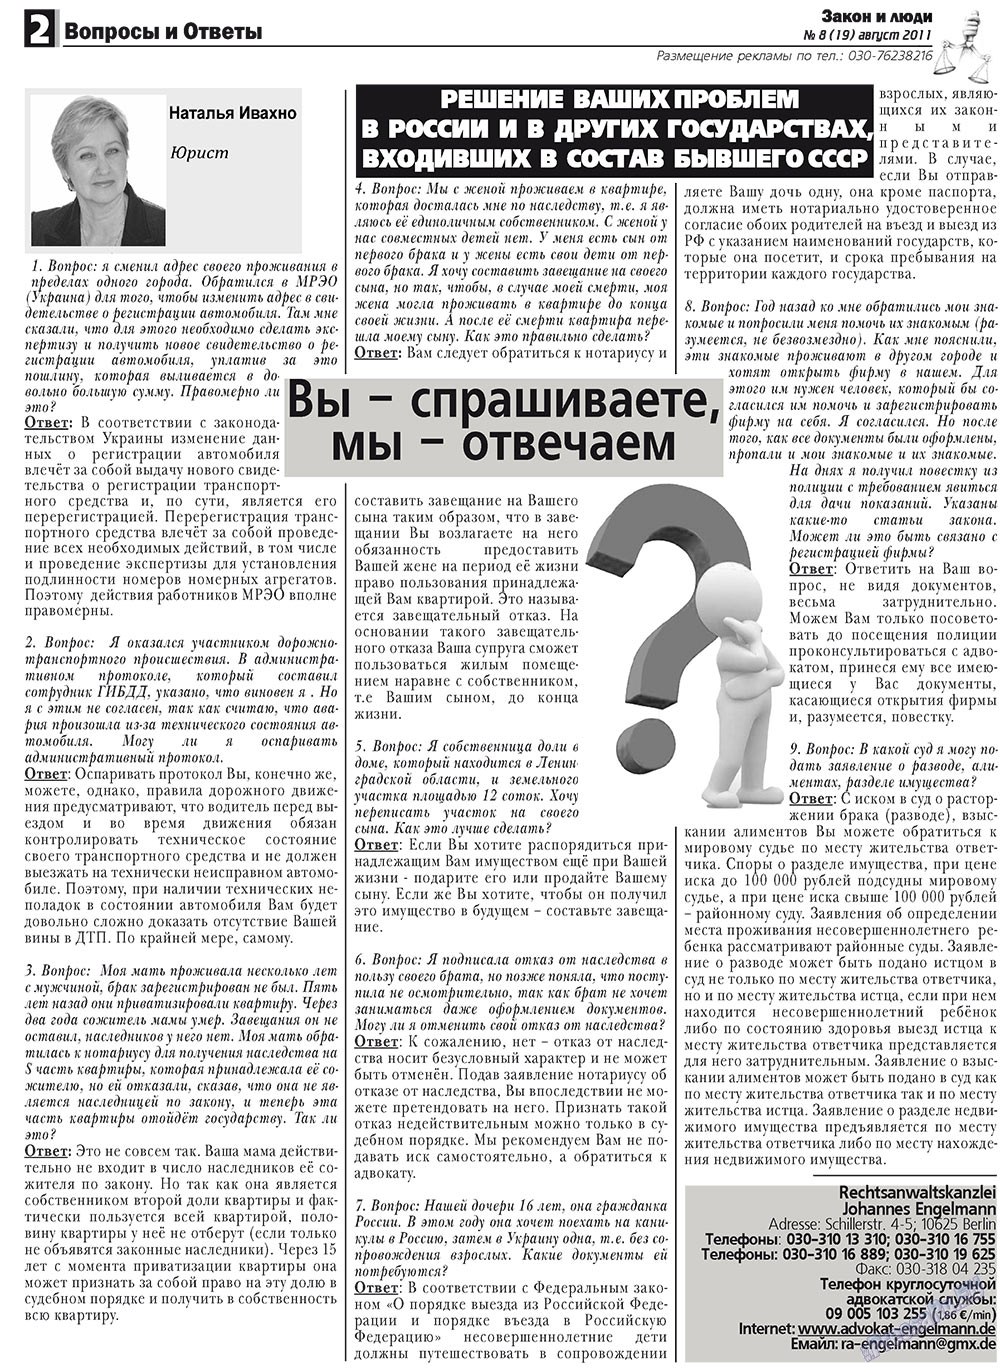 Закон и люди, газета. 2011 №8 стр.2